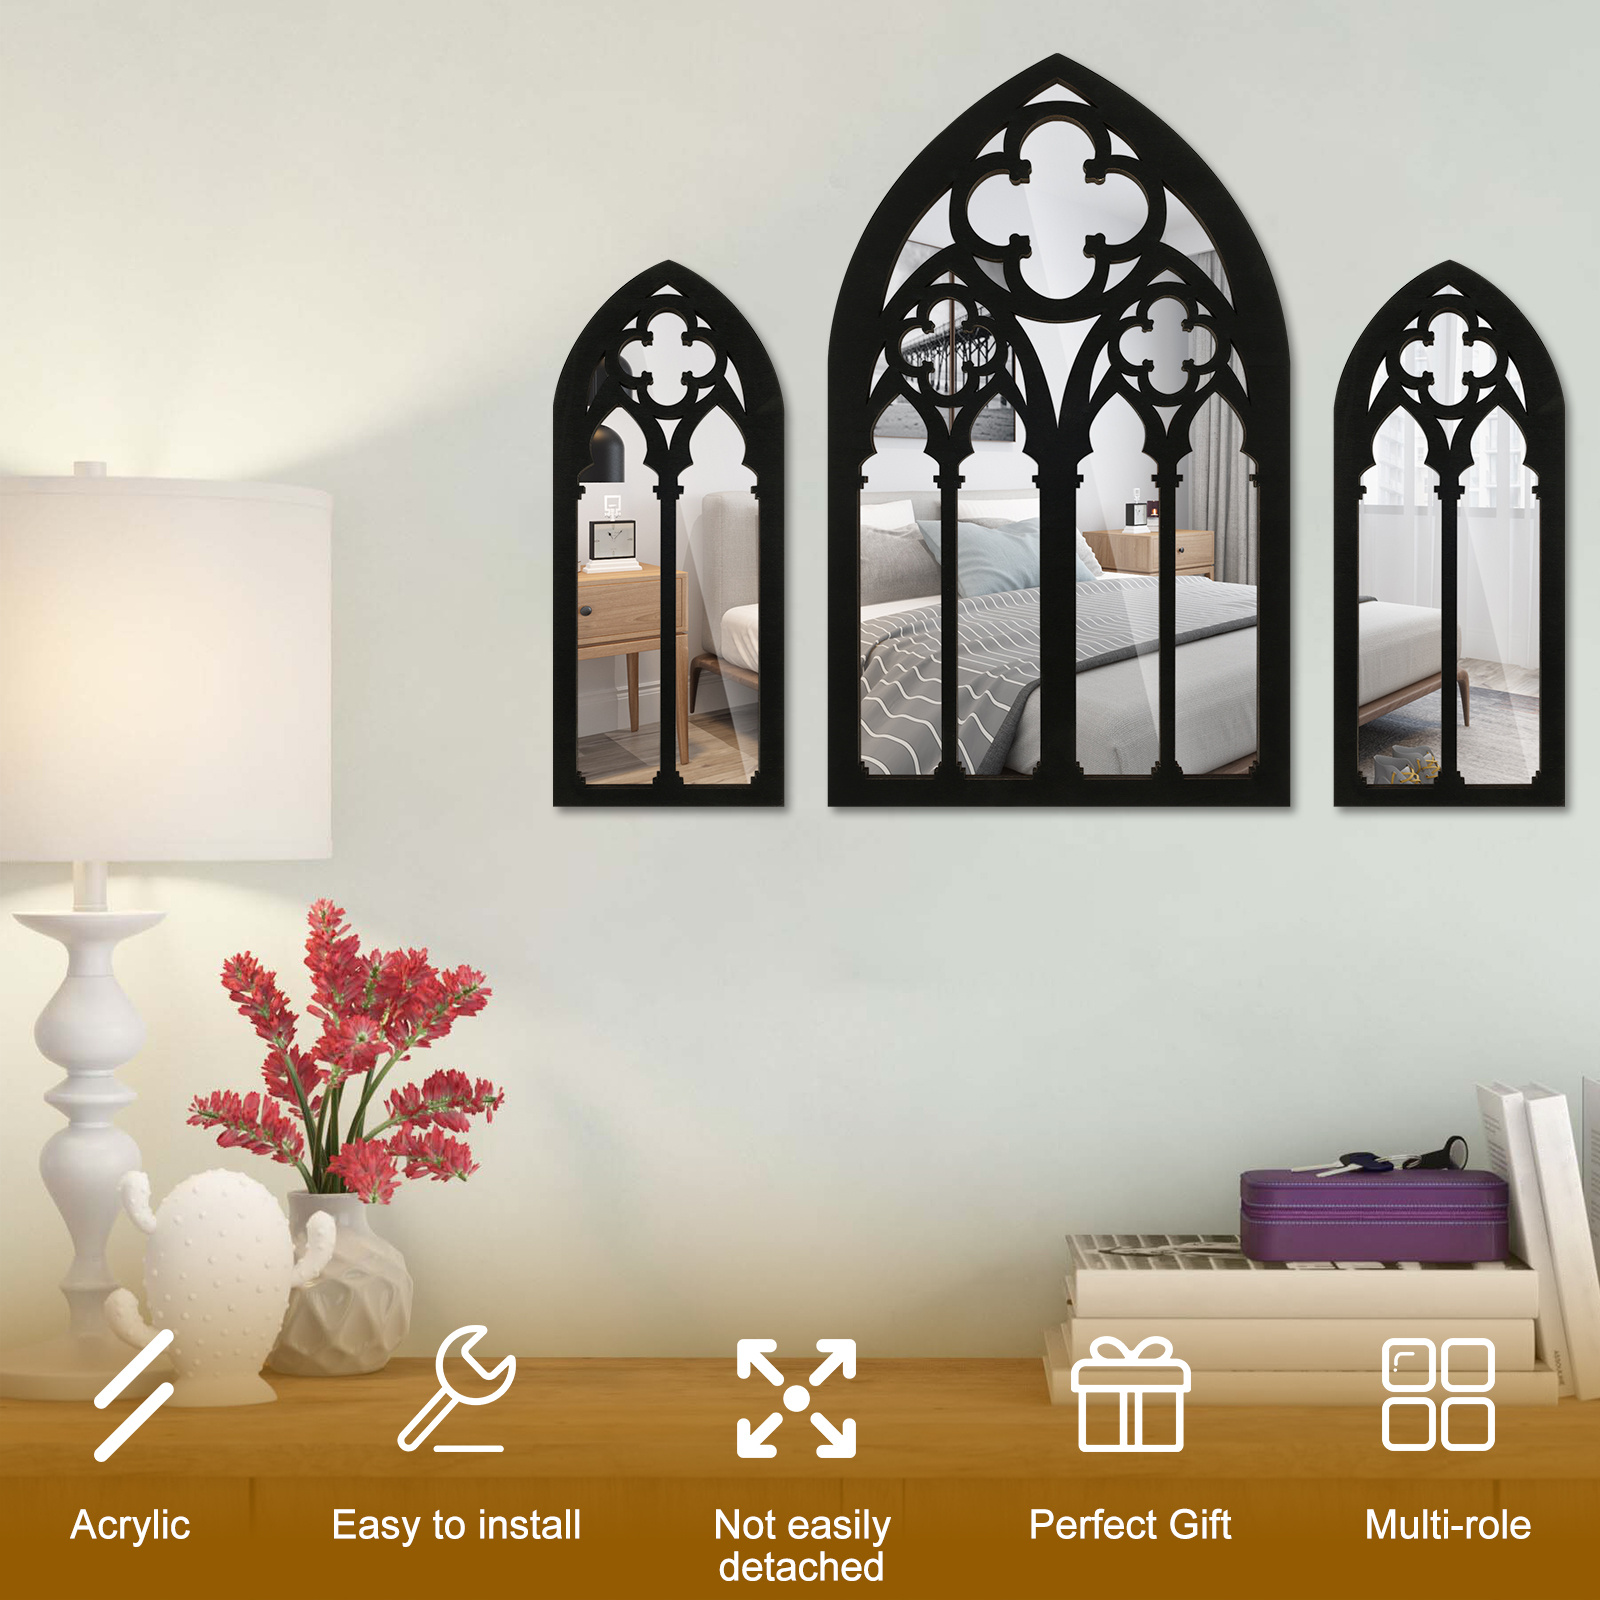 Espejo de pared para ventana, espejos decorativos arqueados para sala de  estar, dormitorio, entrada, baño, tocador